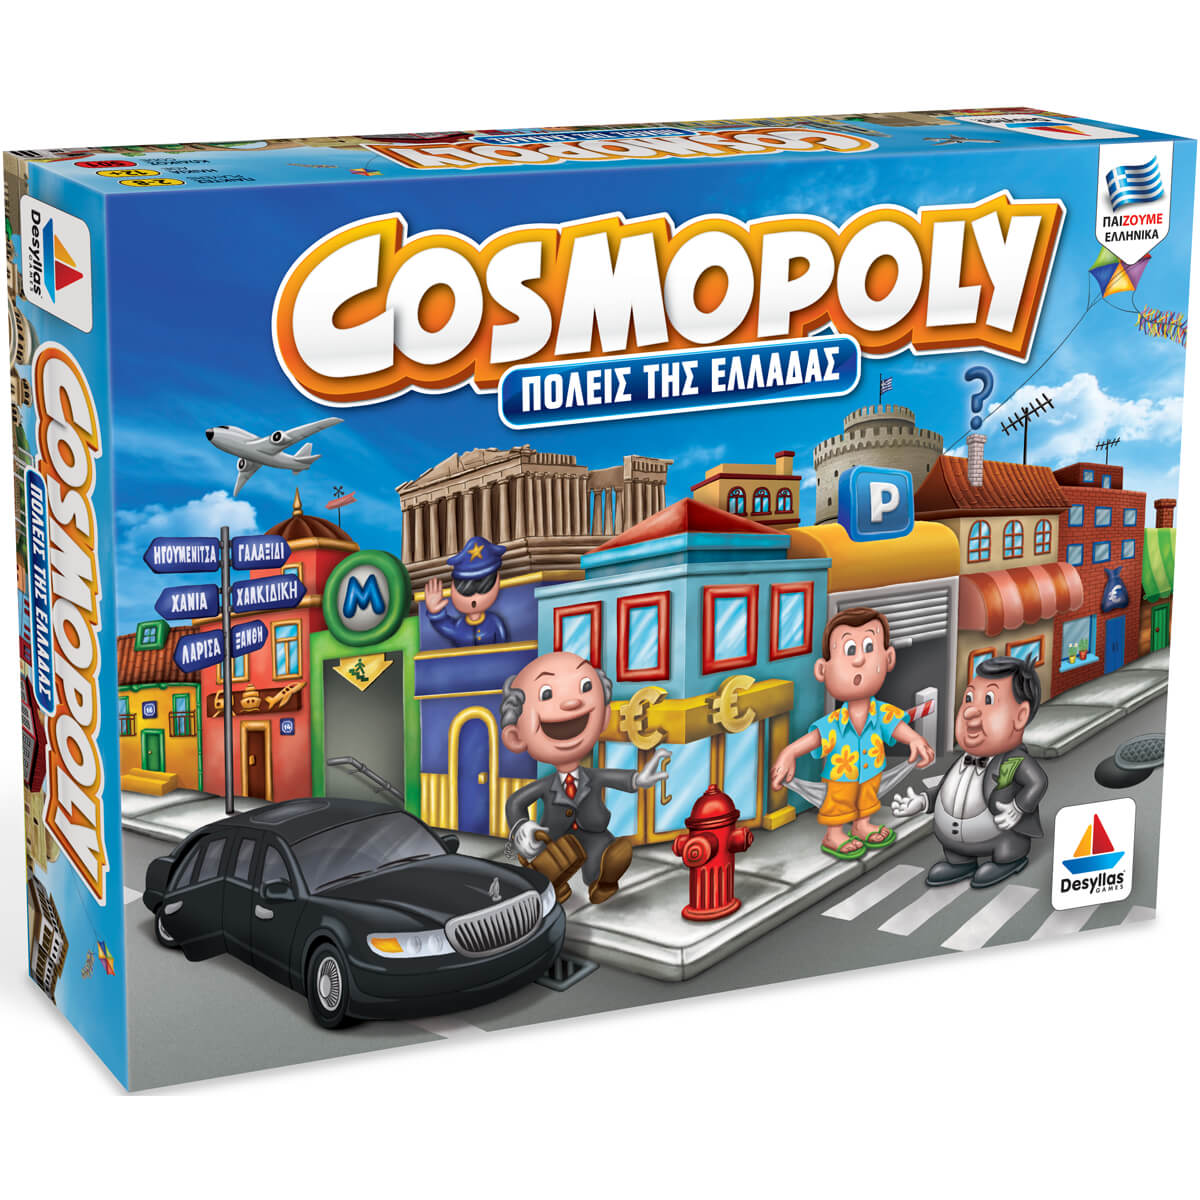 ΠΑΙΔΙ | Παιχνίδια | Έπιτραπέζια - Παζλ - Βιβλία - Χειροτεχνίες | ΕΠΙΤΡΑΠΕΖΙΑ 556 Cosmopoly (Πόλεις Της Ελλάδας)